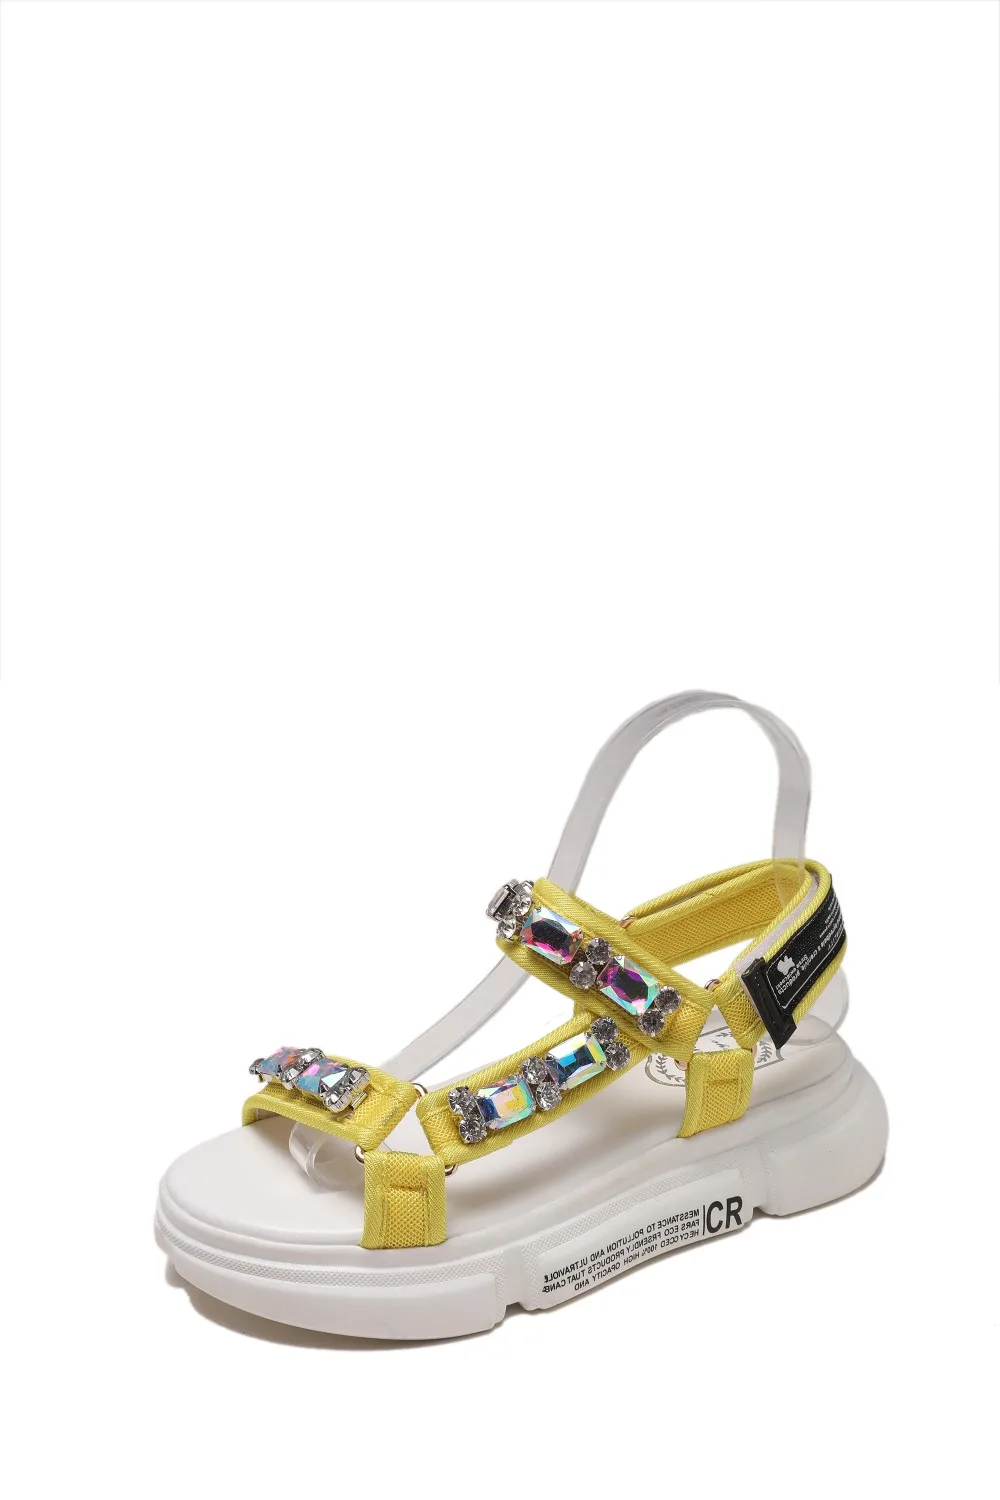 Г. Модные женские Босоножки с открытым носком дышащая удобная цепочка с камнем Женская прогулочная обувь летние сандалии на платформе для девочек на плоской подошве